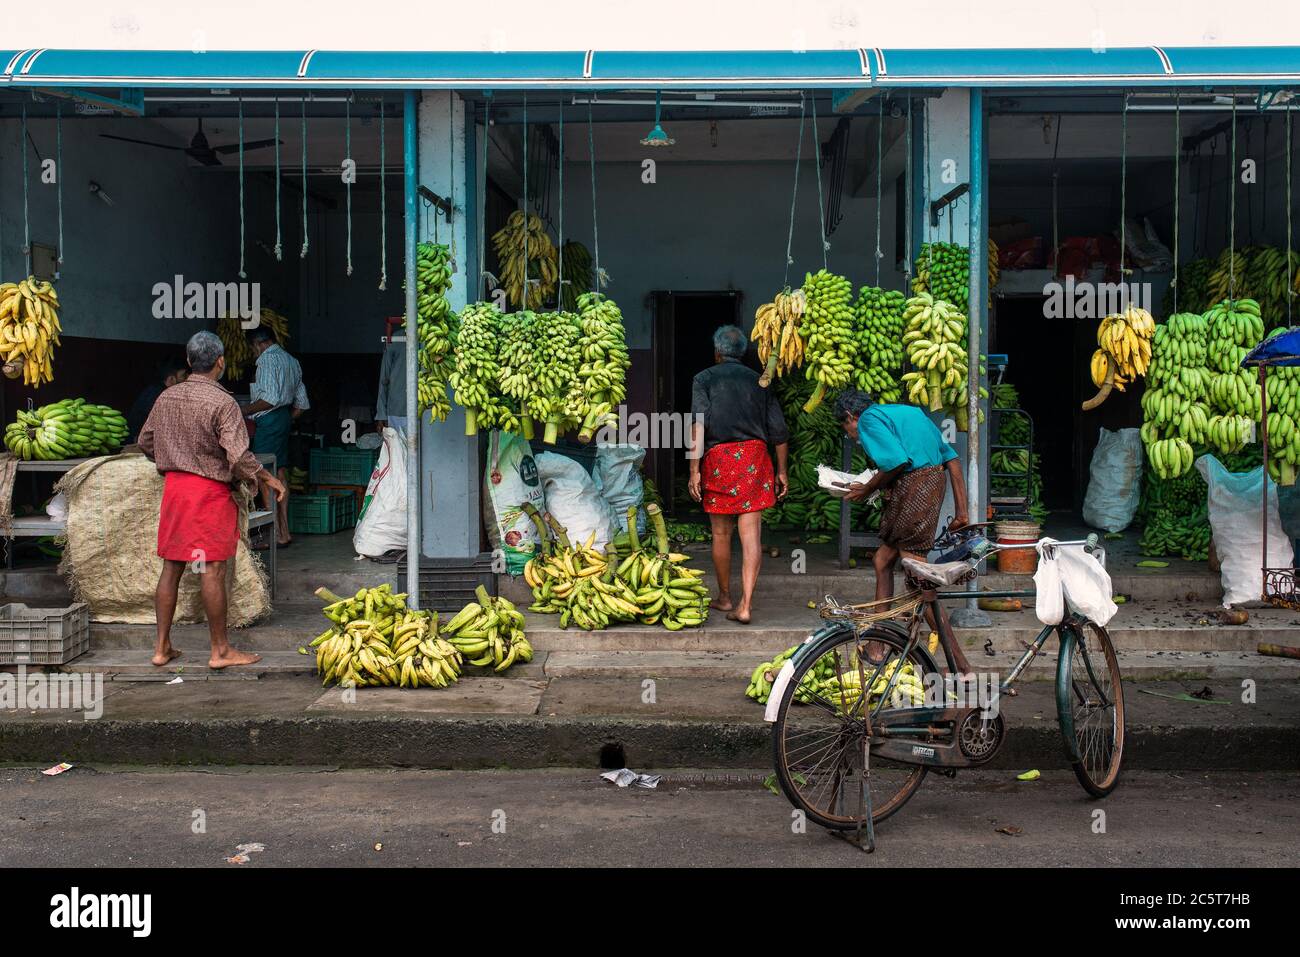 Banana shop in street market, Fort Cochi, Kerala, India Stock Photo